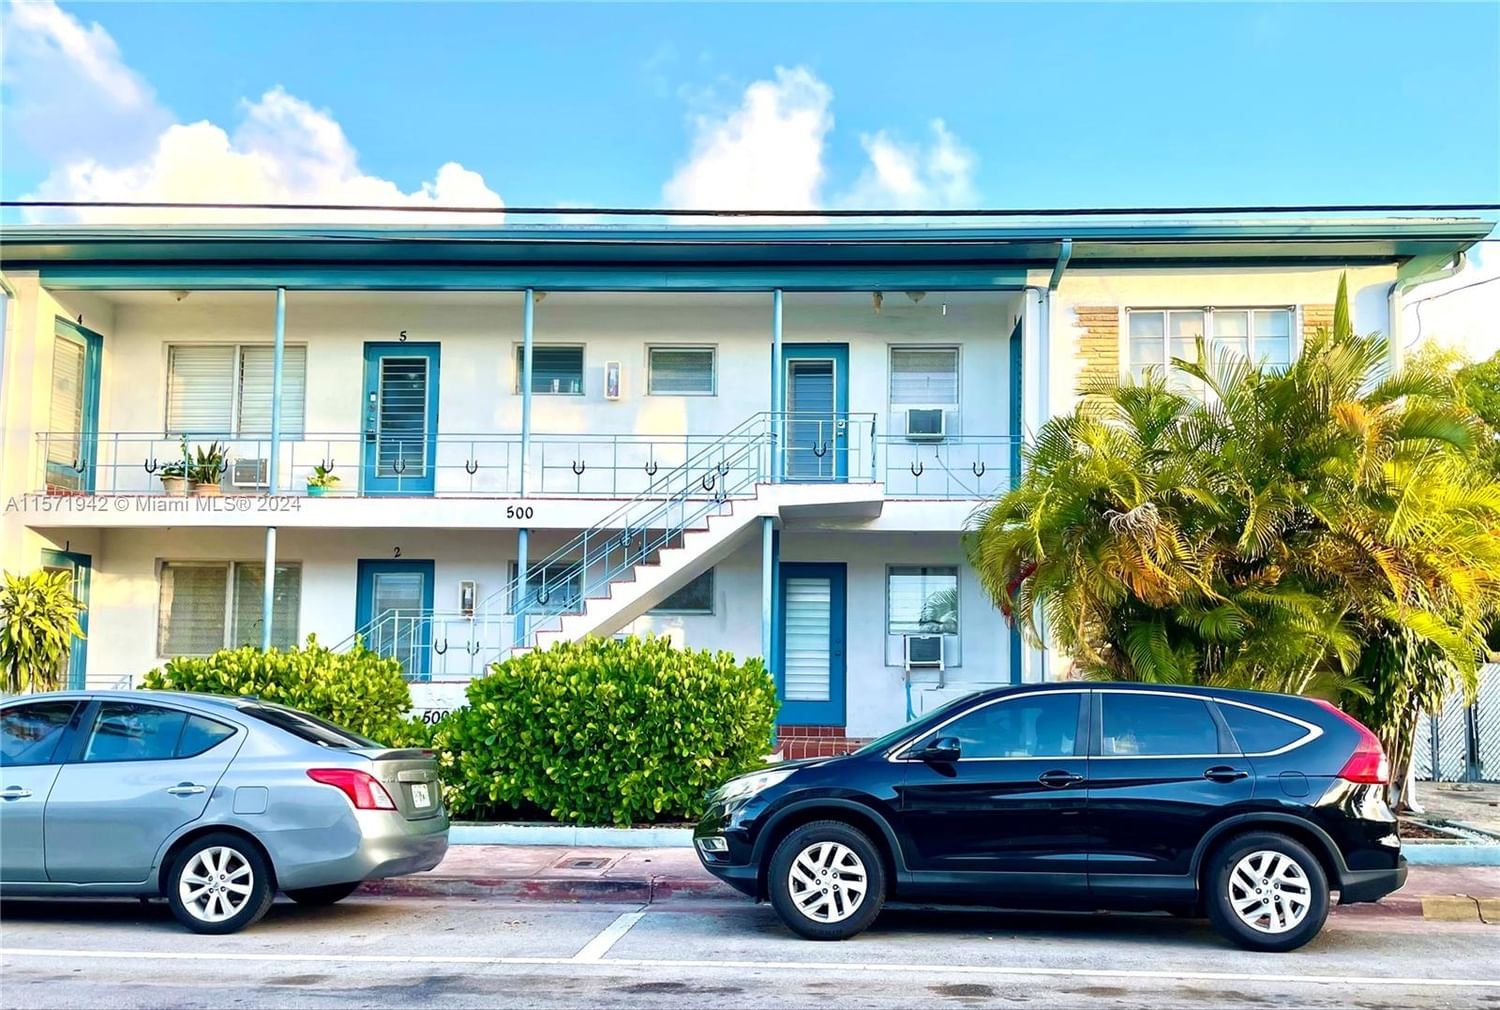 Real estate property located at 500 77th St #3, Miami-Dade County, HORSESHOE CONDOMINIUM, Miami Beach, FL